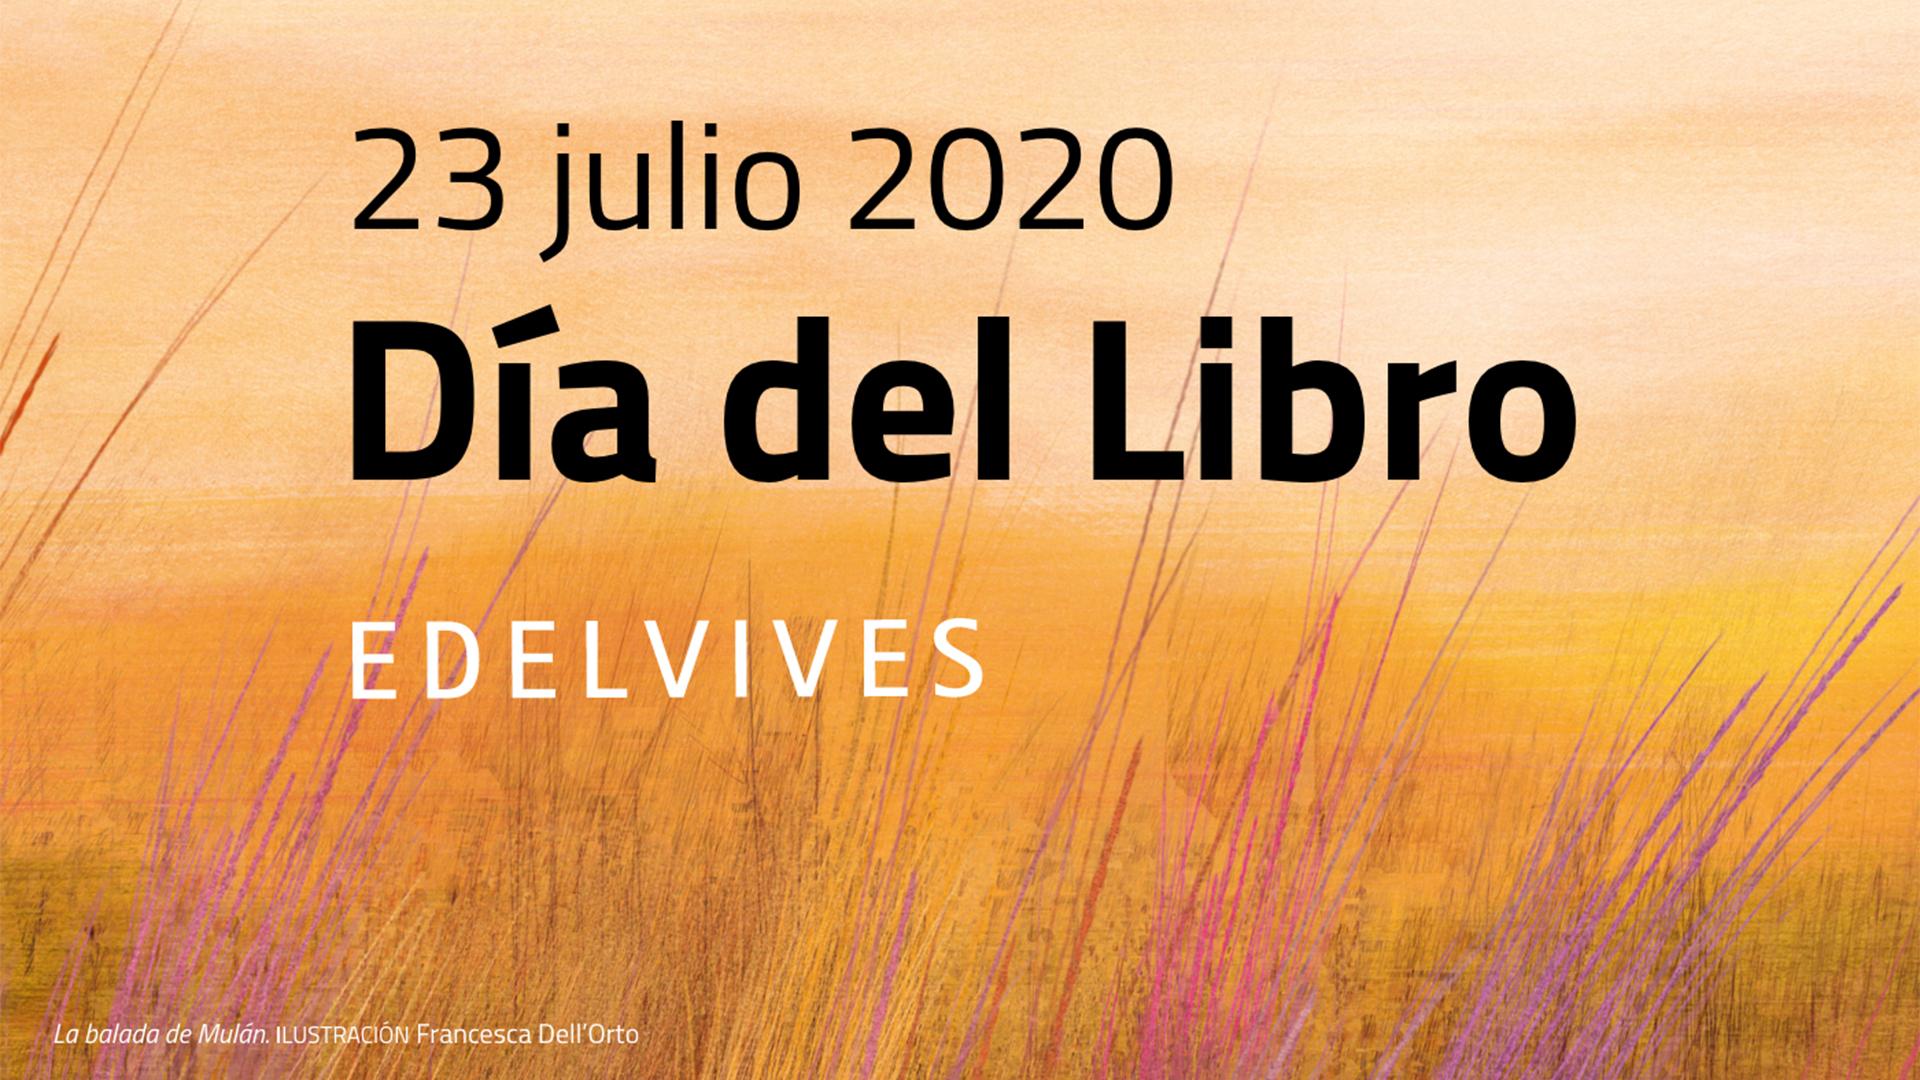 El 23 de julio, celebra el Día del Libro con Edelvives